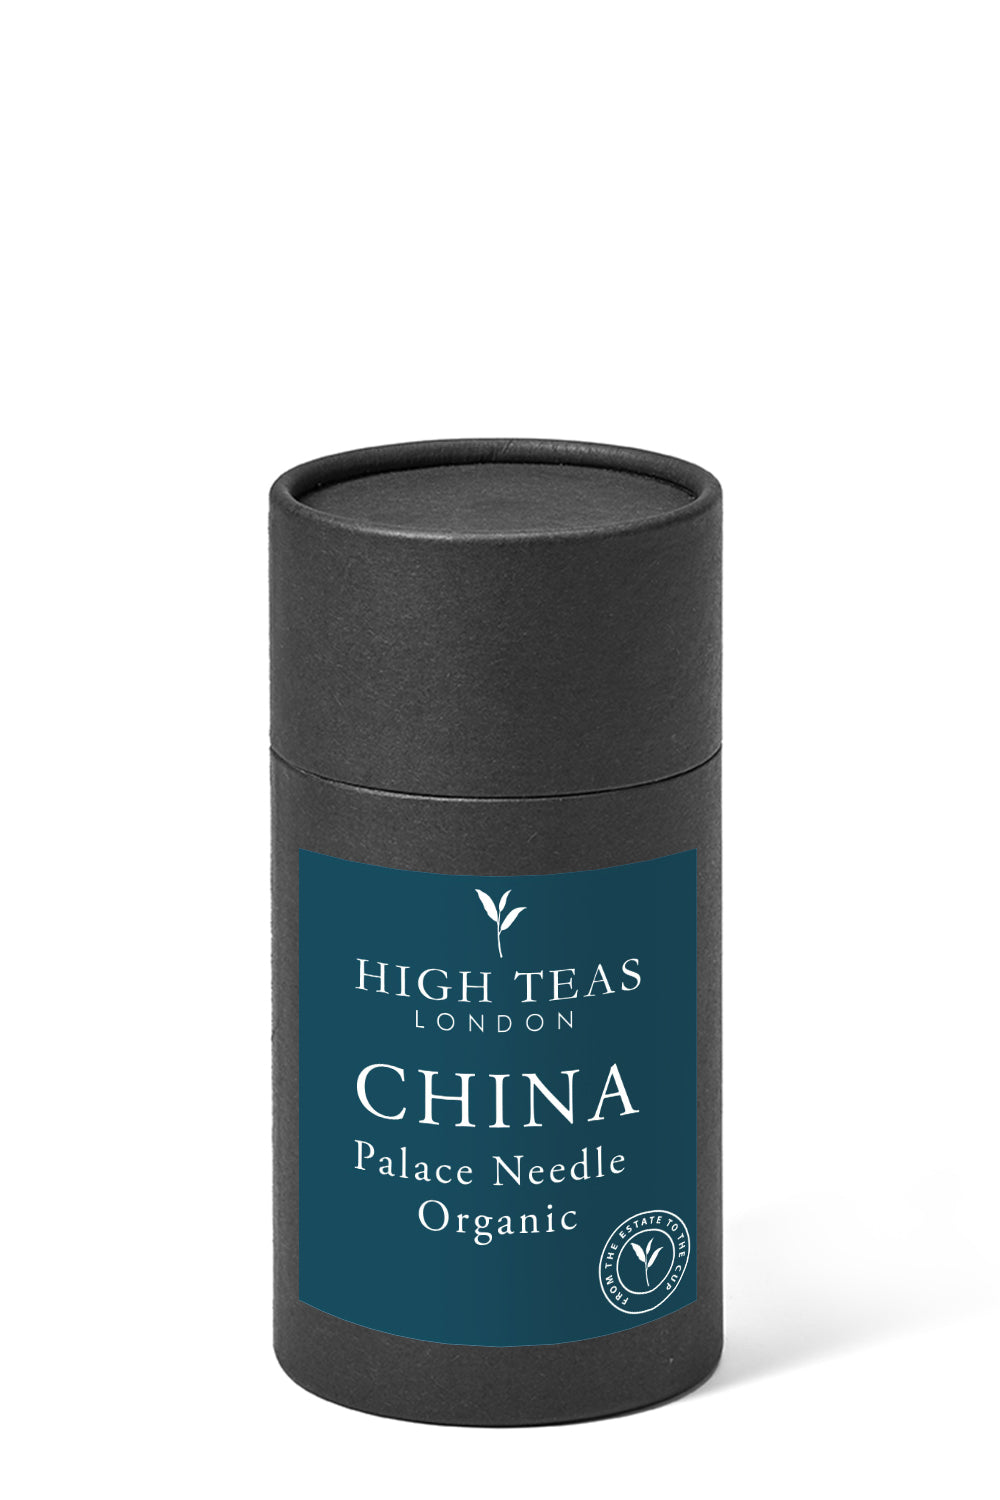 Palace Needle - Organic-60g gift-Loose Leaf Tea-High Teas